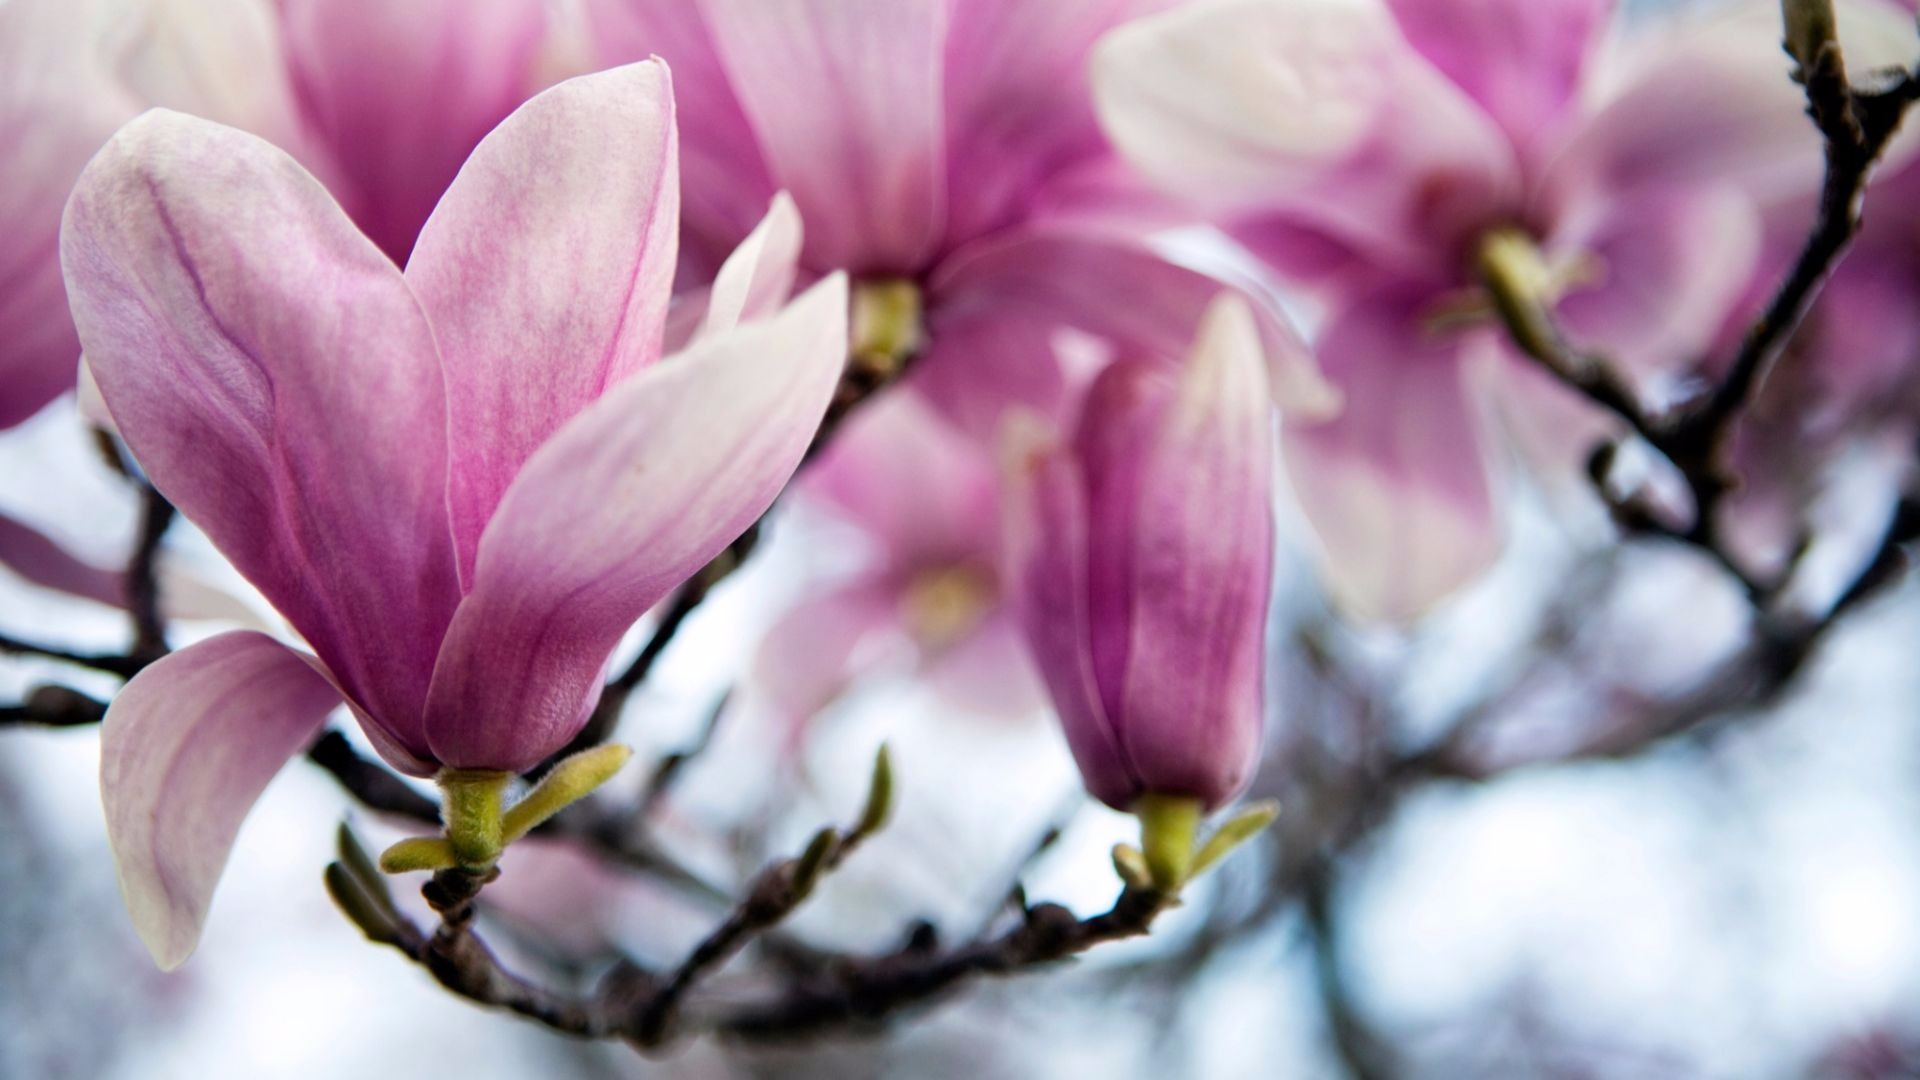 saucer magnolia: a springtime spectacular - arbor day blog